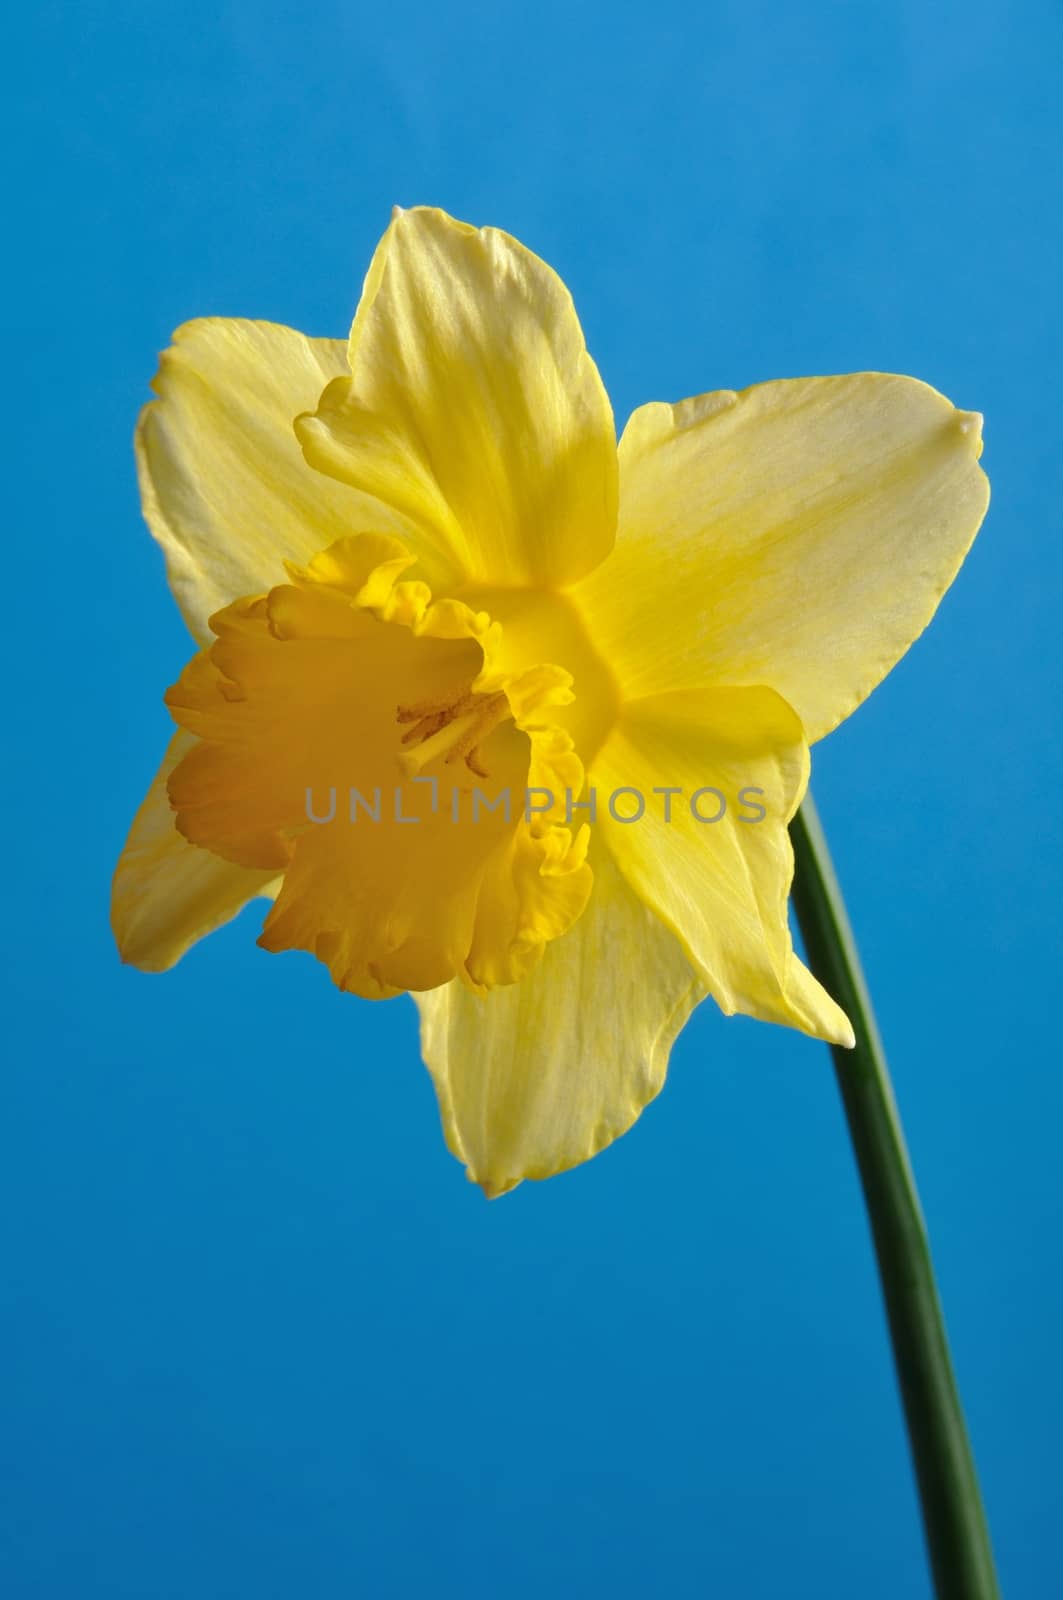 daffodil by BZH22